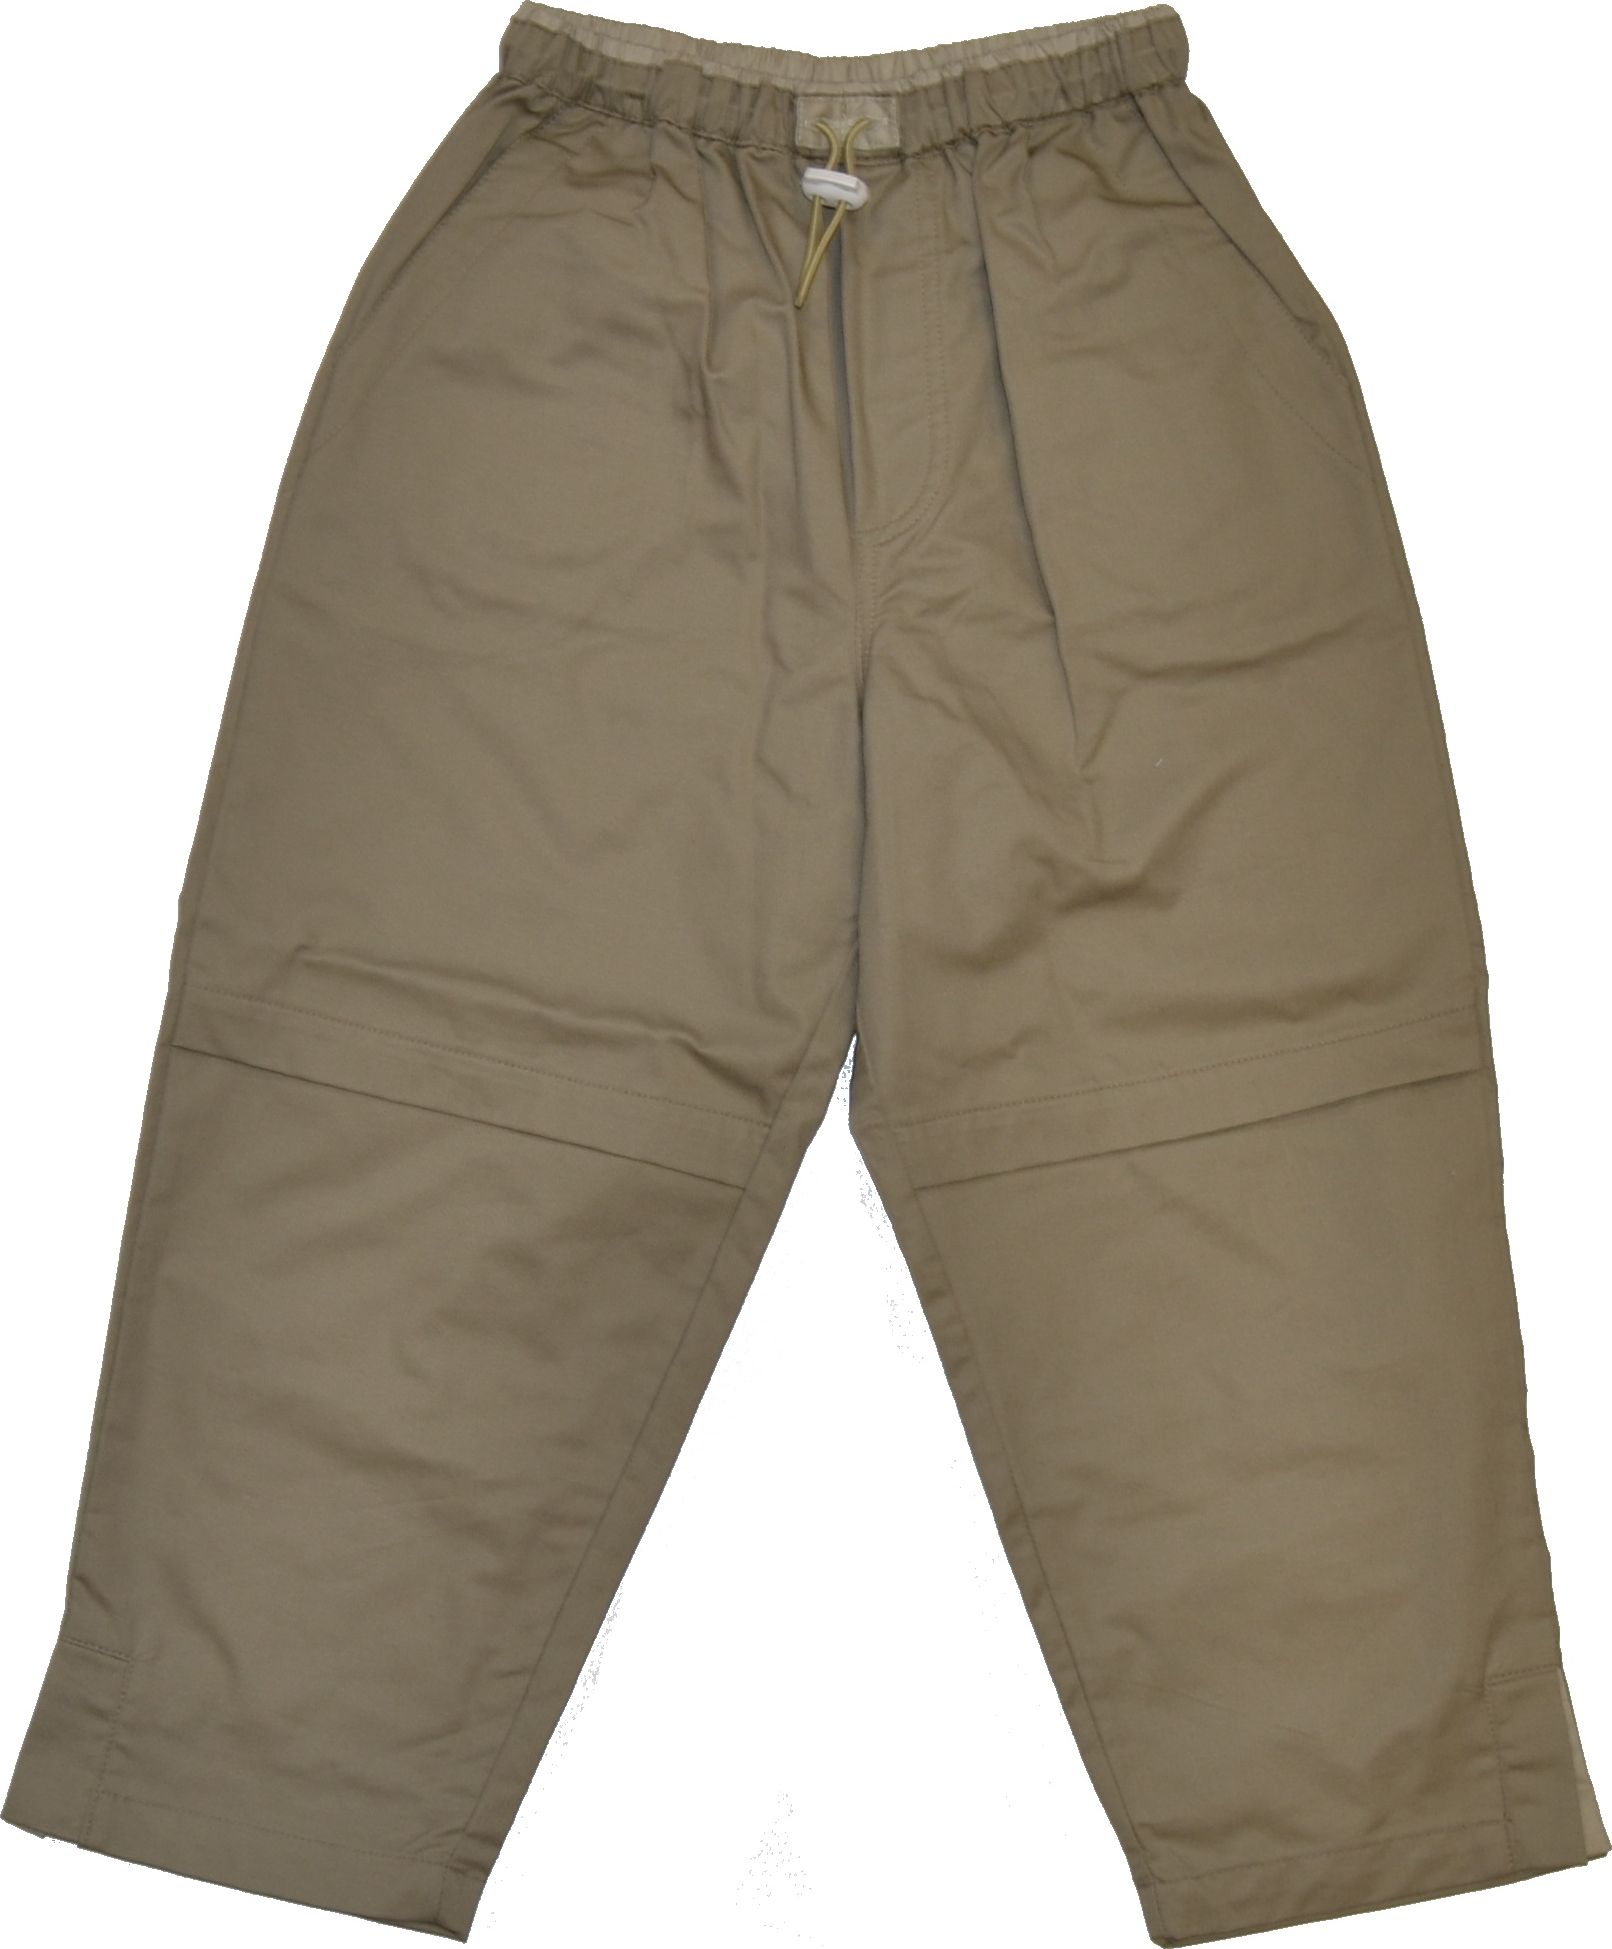 Dětské kalhoty, béžové, vel. 4 roky Výprodej - obrázek 1